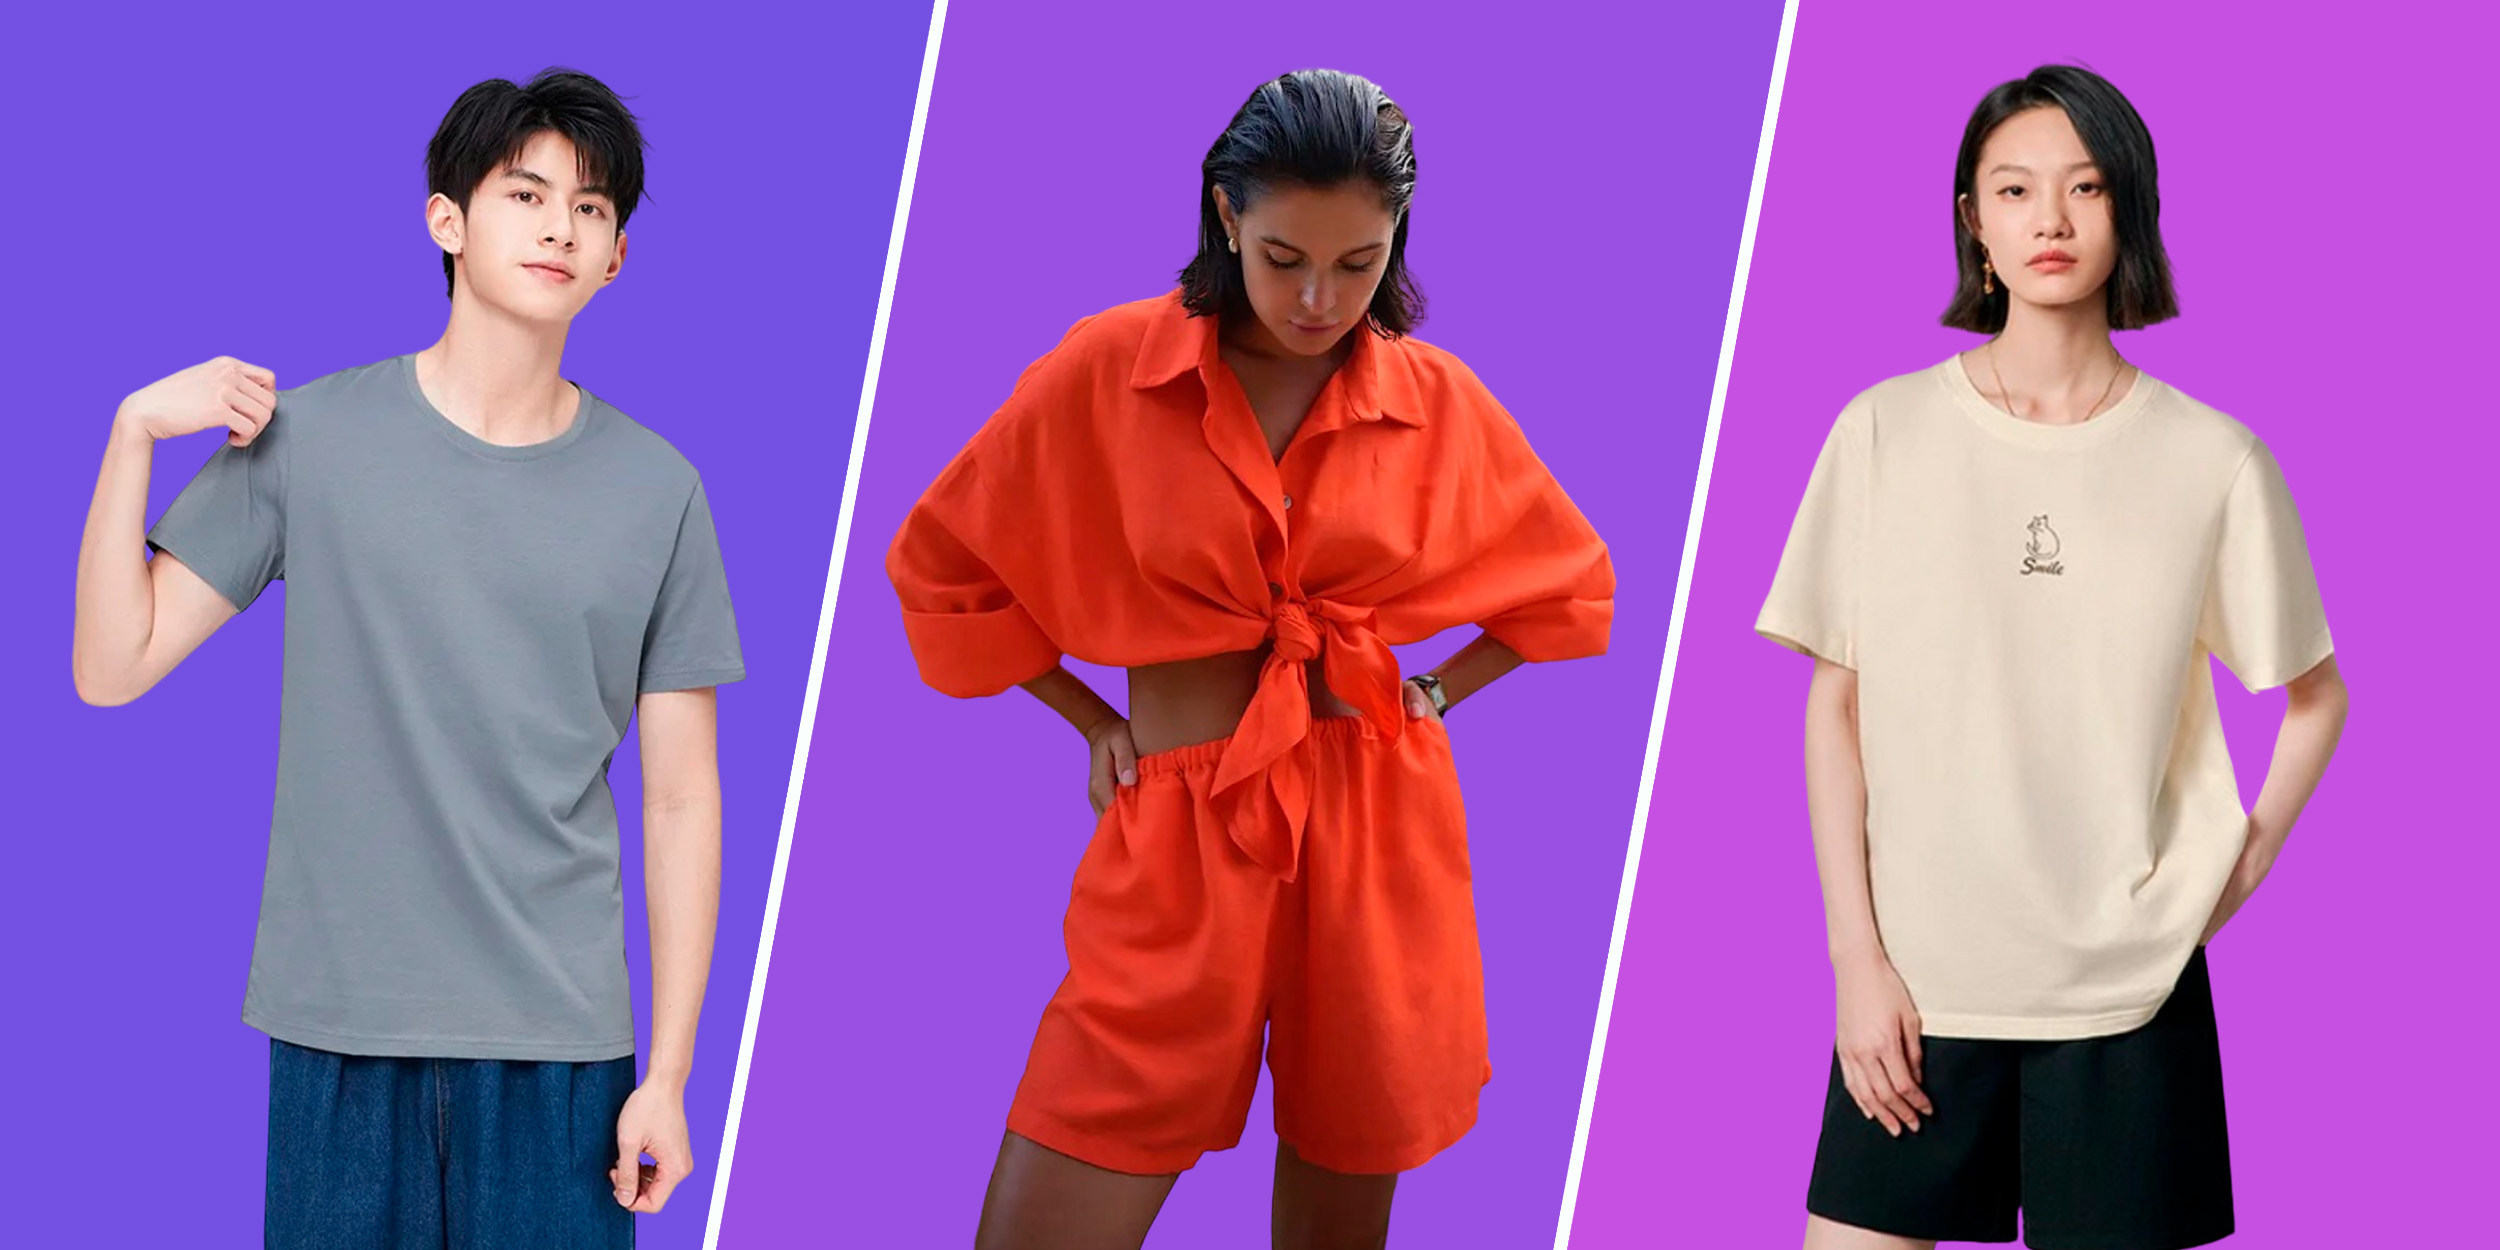 Распродажа «Стильное лето» на AliExpress: забираем модную одежду с хорошими скидками